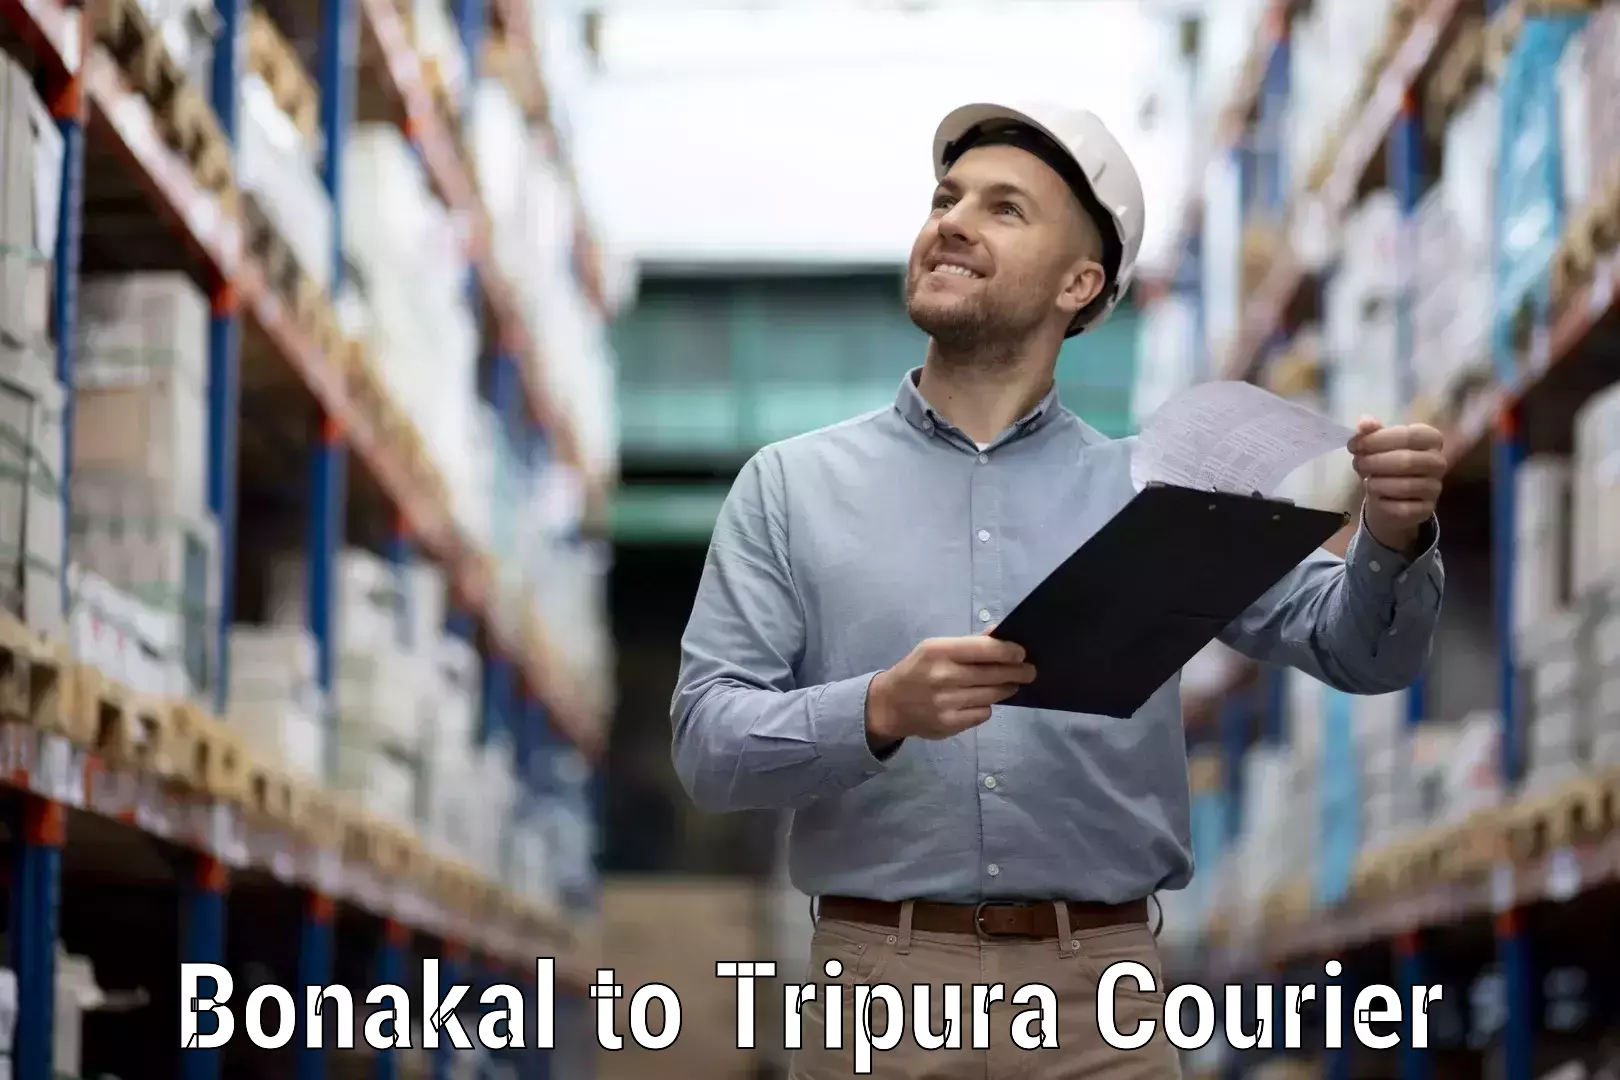 Reliable delivery network Bonakal to IIIT Agartala